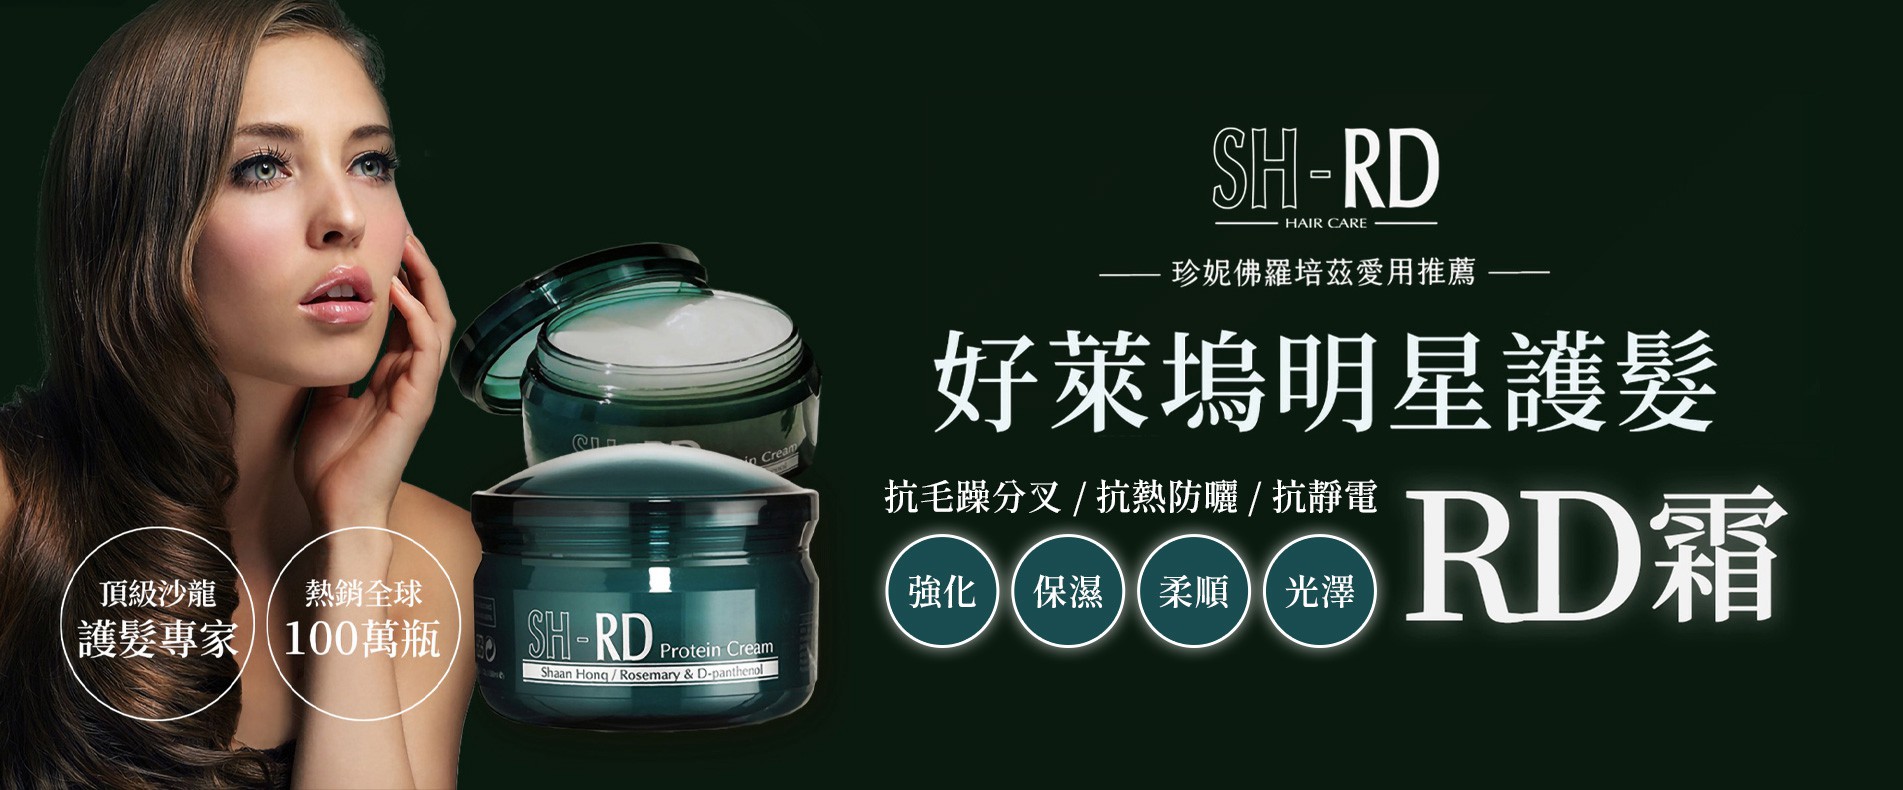 SH-RD蛋白質護髮霜